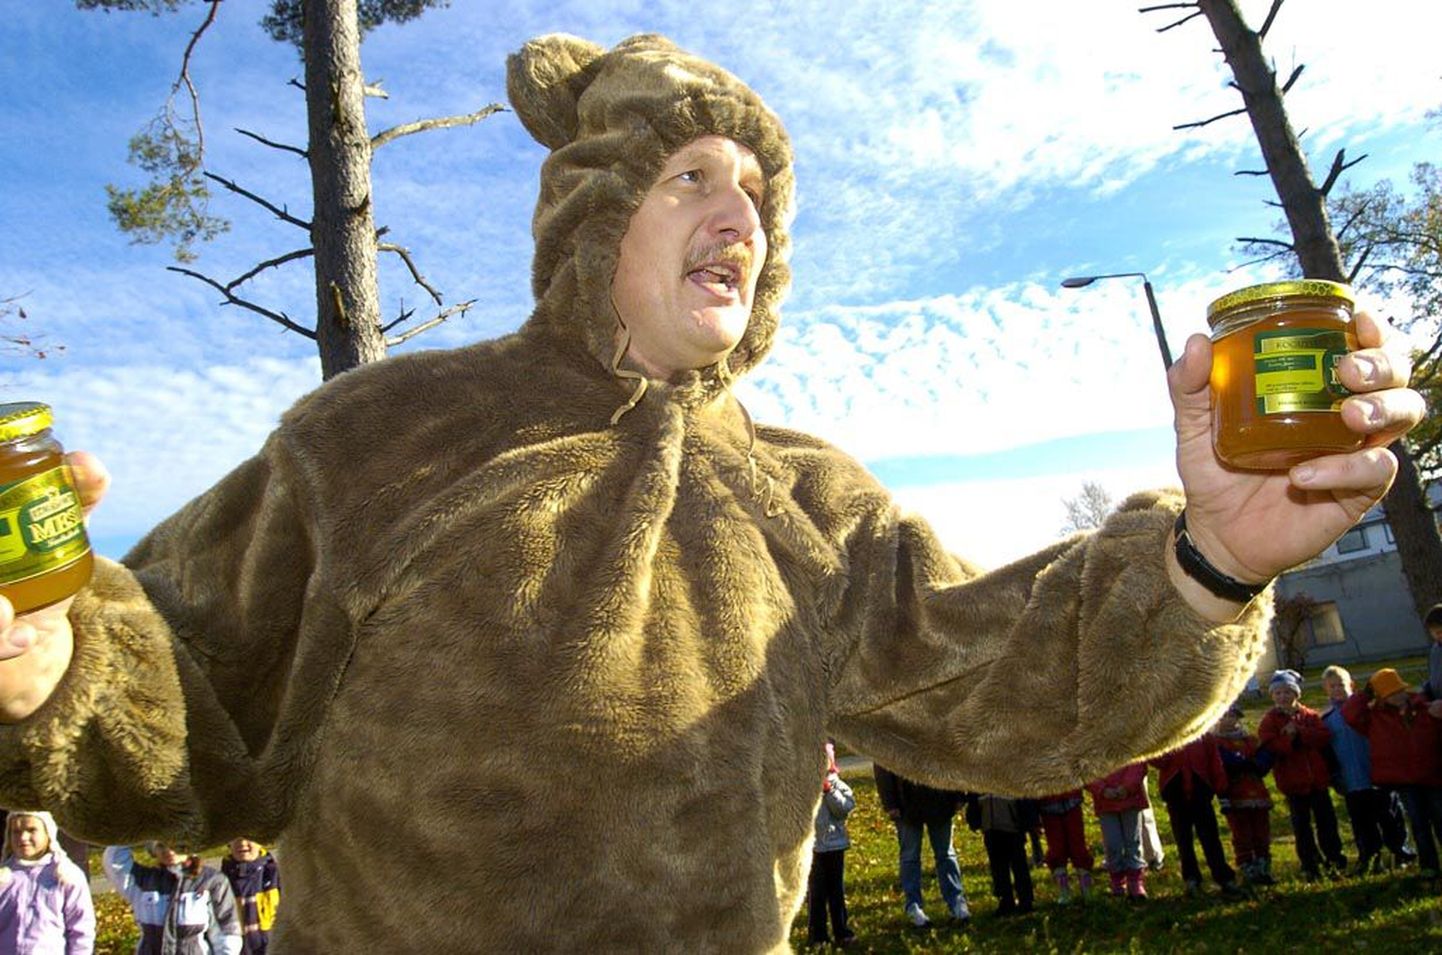 Paikuse vallas võitis 2005. aasta kohalikud valimised mäekõrguselt parteitu Kuno Erkmann, kes kolm päeva hiljem valla aastapäeval pani selga karu kostüümi ja lubas kohe uut lasteaeda ehitama hakata. Lasteaed saigi valmis ja vahepeal Rahvaliitu astunud Erkmann kandideerib taas valimisliidu nimekirja eesotsas.